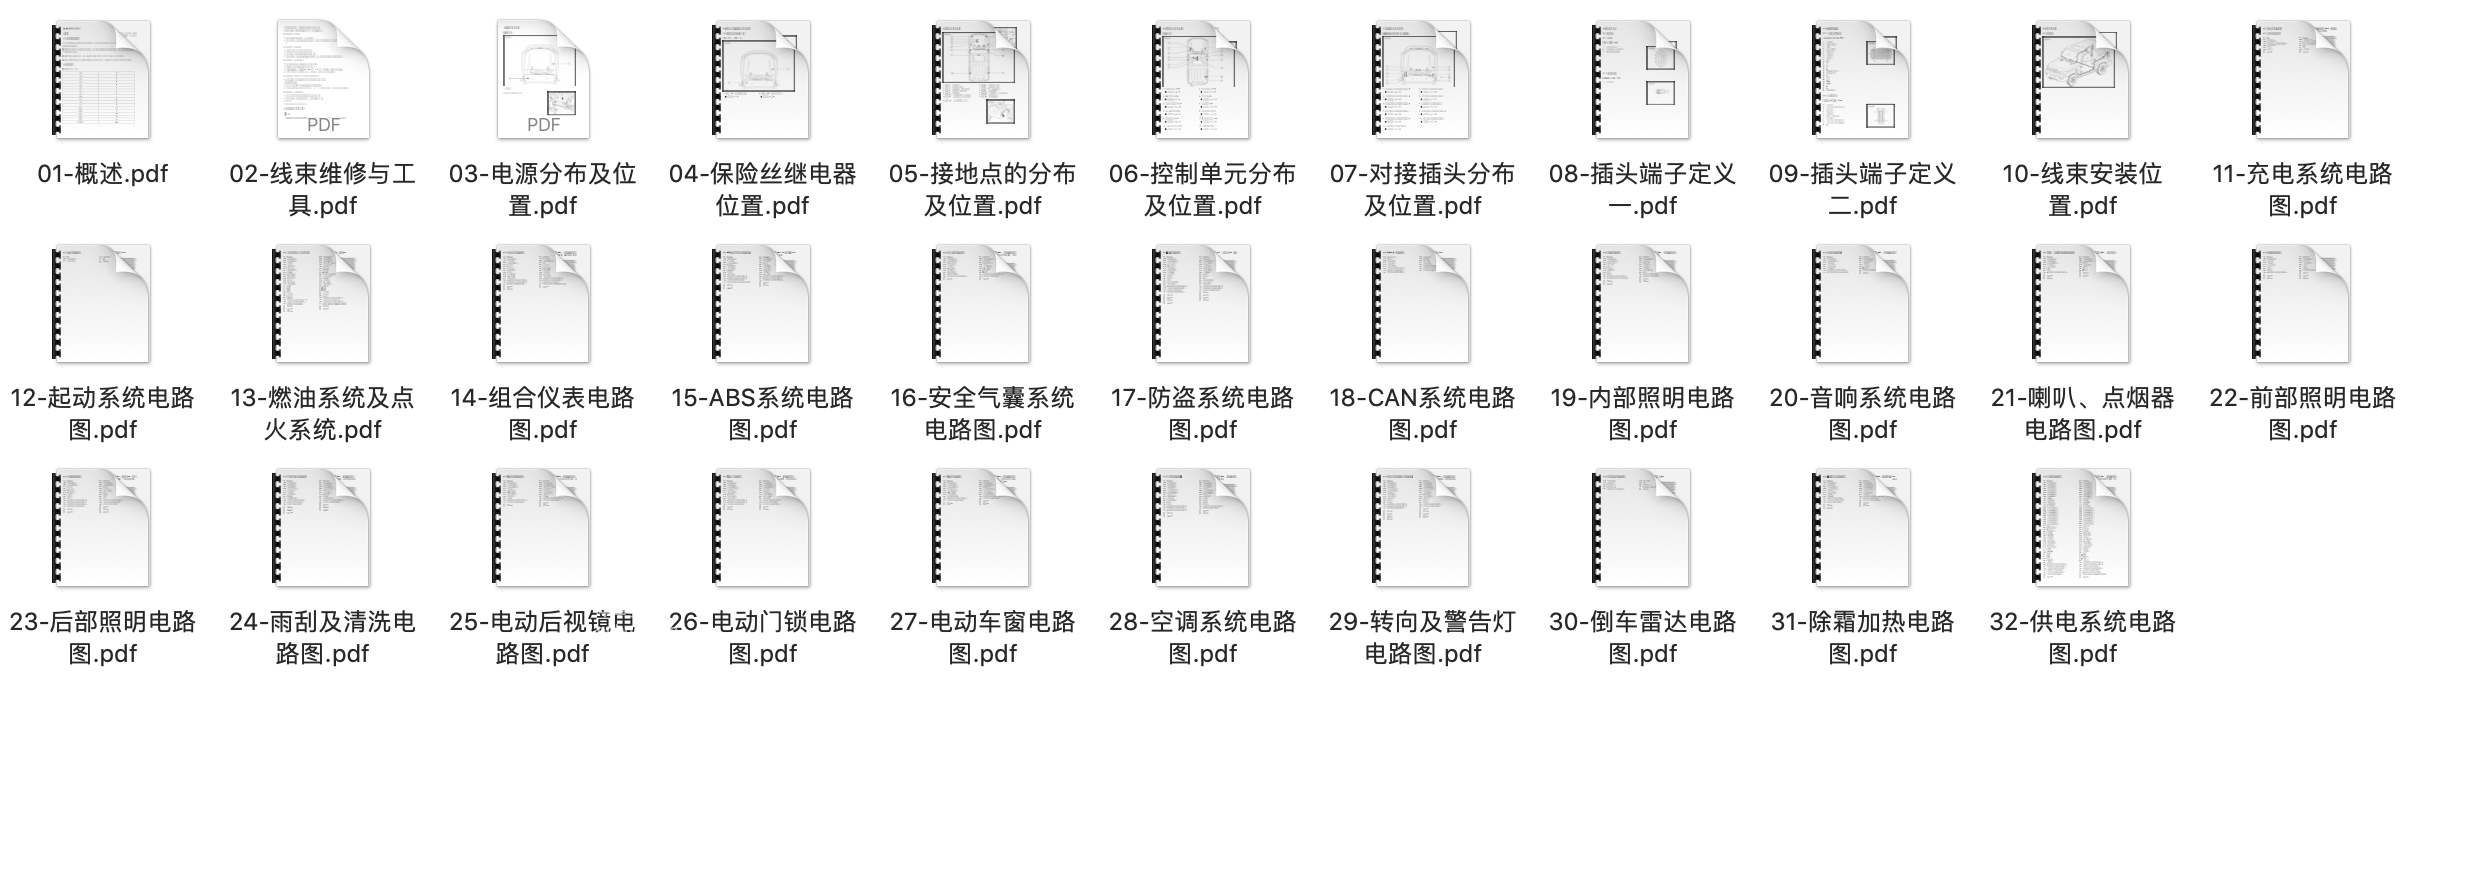 2013款北京汽车BJ40全车电路图手册下载